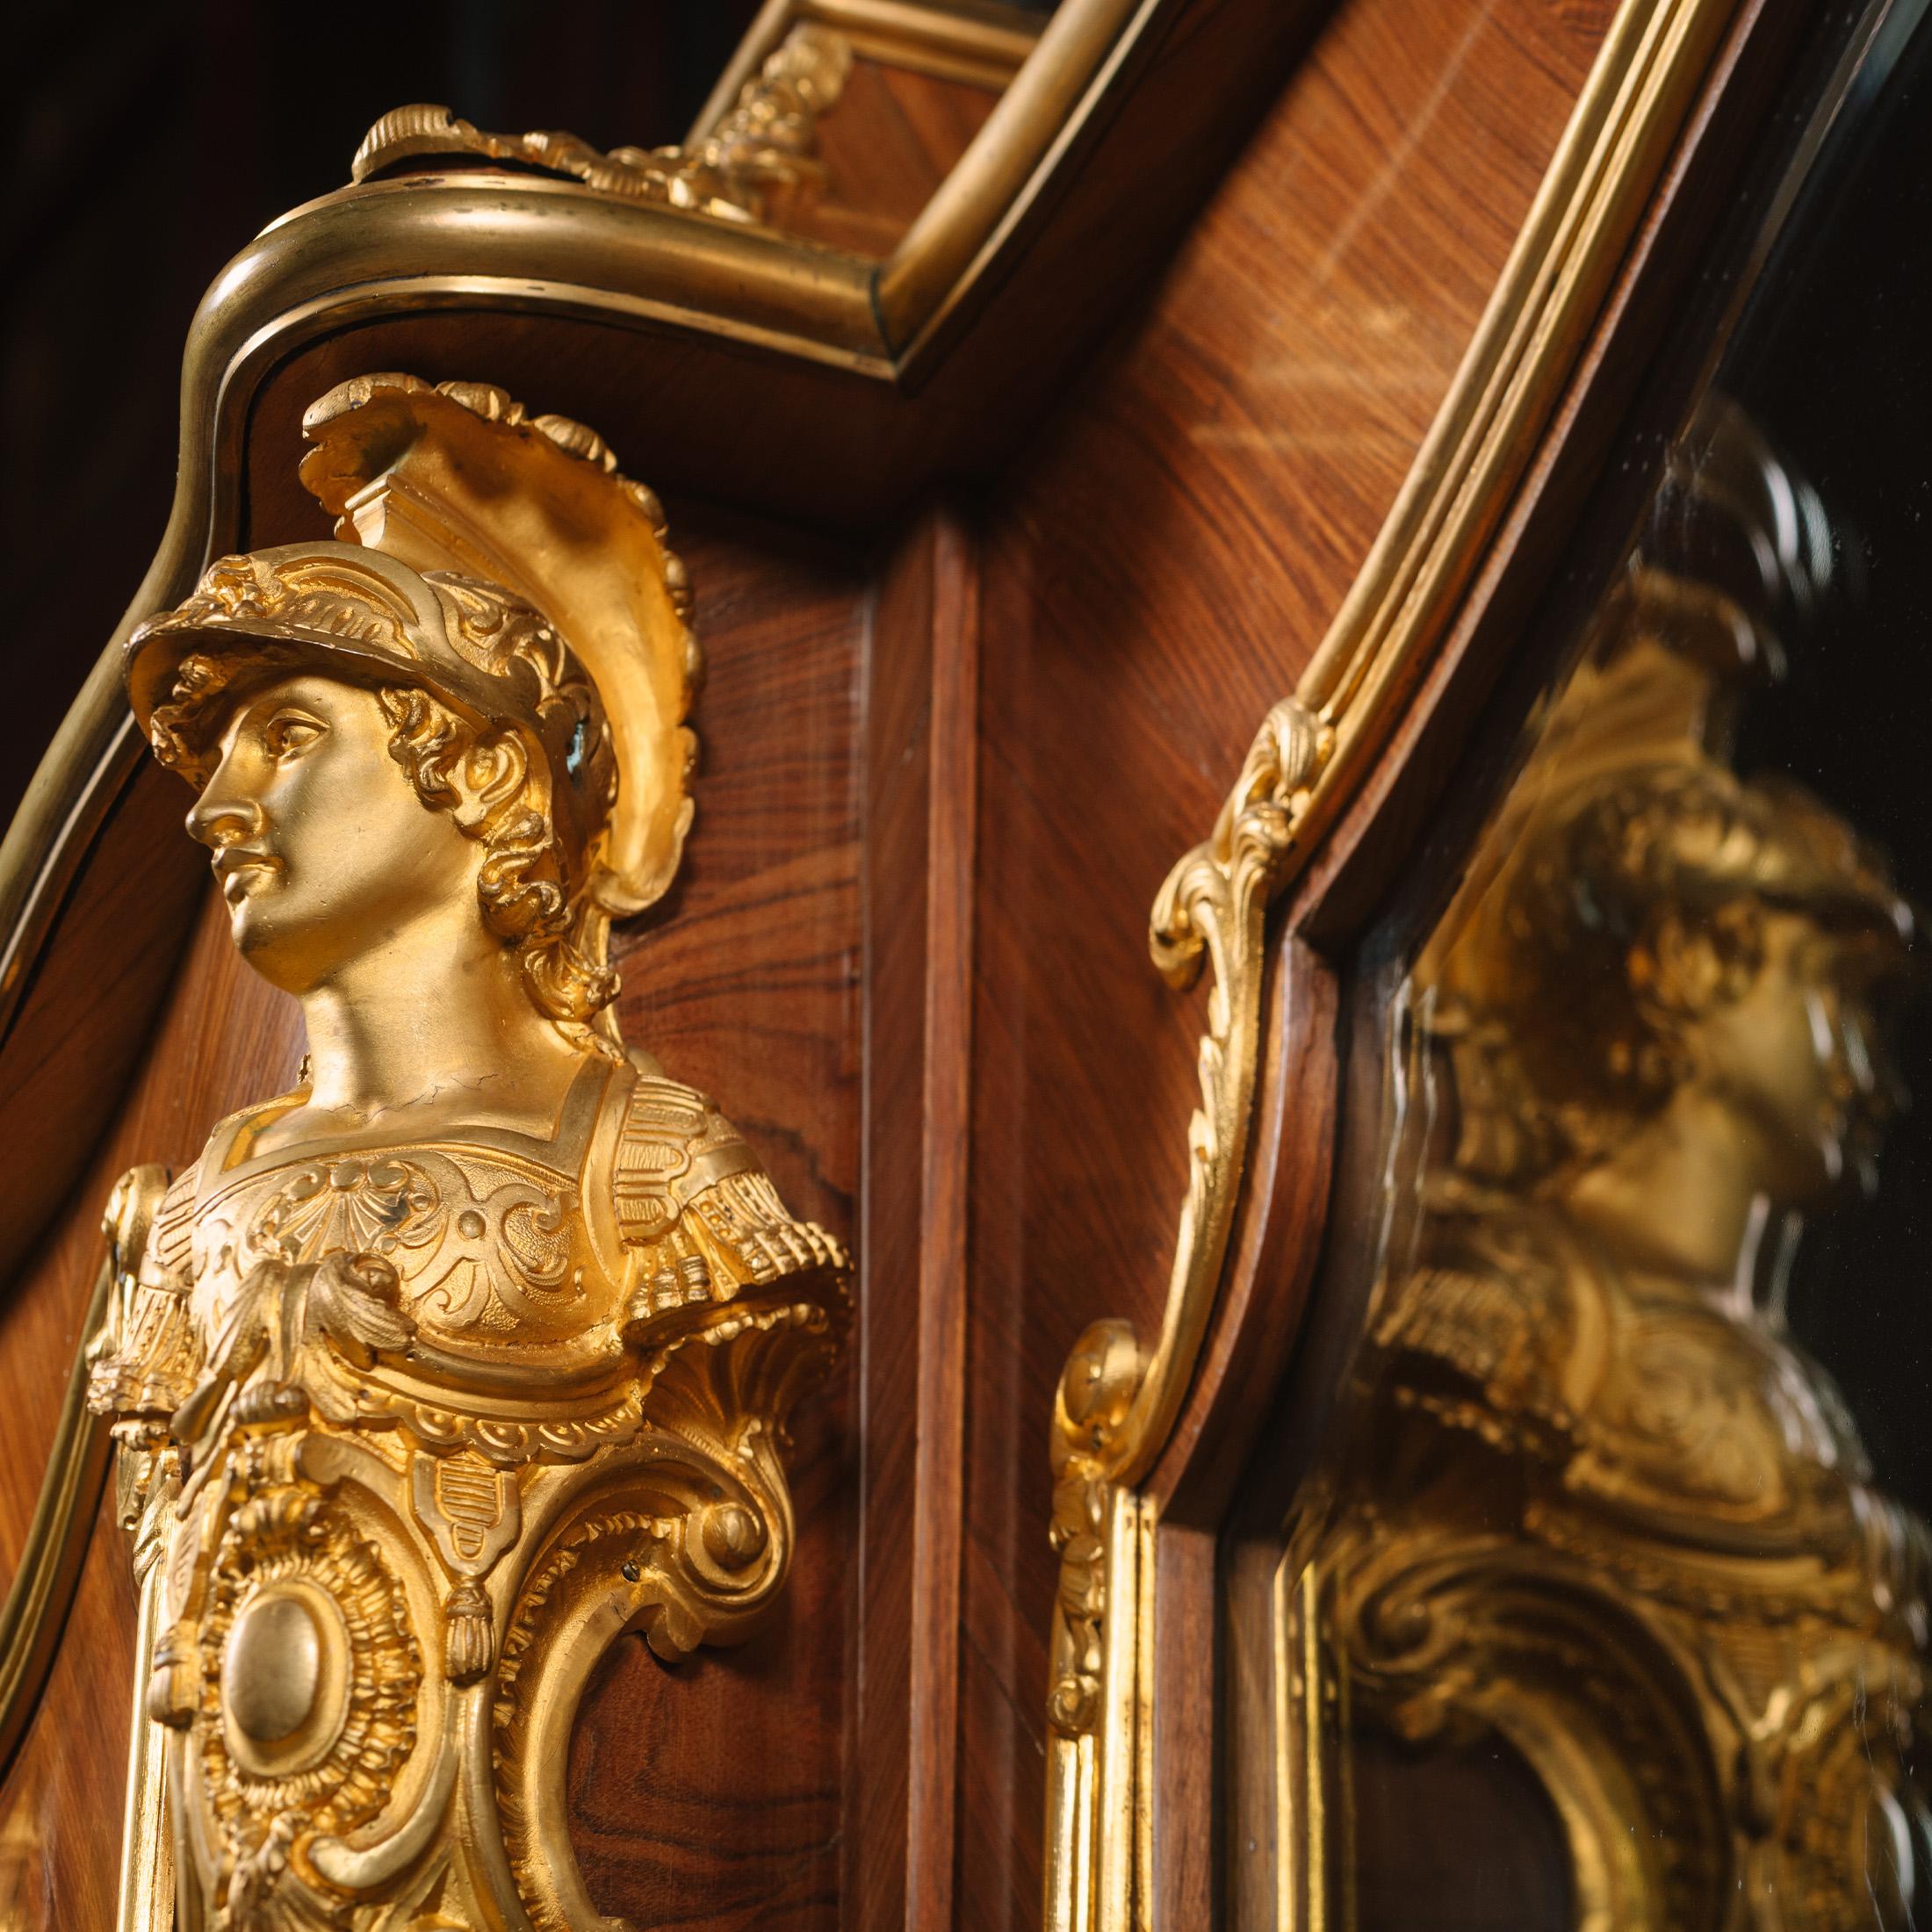 Une bibliothèque de style Louis XV montée en bronze doré, attribuée à François Linke.

Cette bibliothèque est richement ornée de bronze doré, notamment les bustes de soldats aux angles, connus sous le nom de 